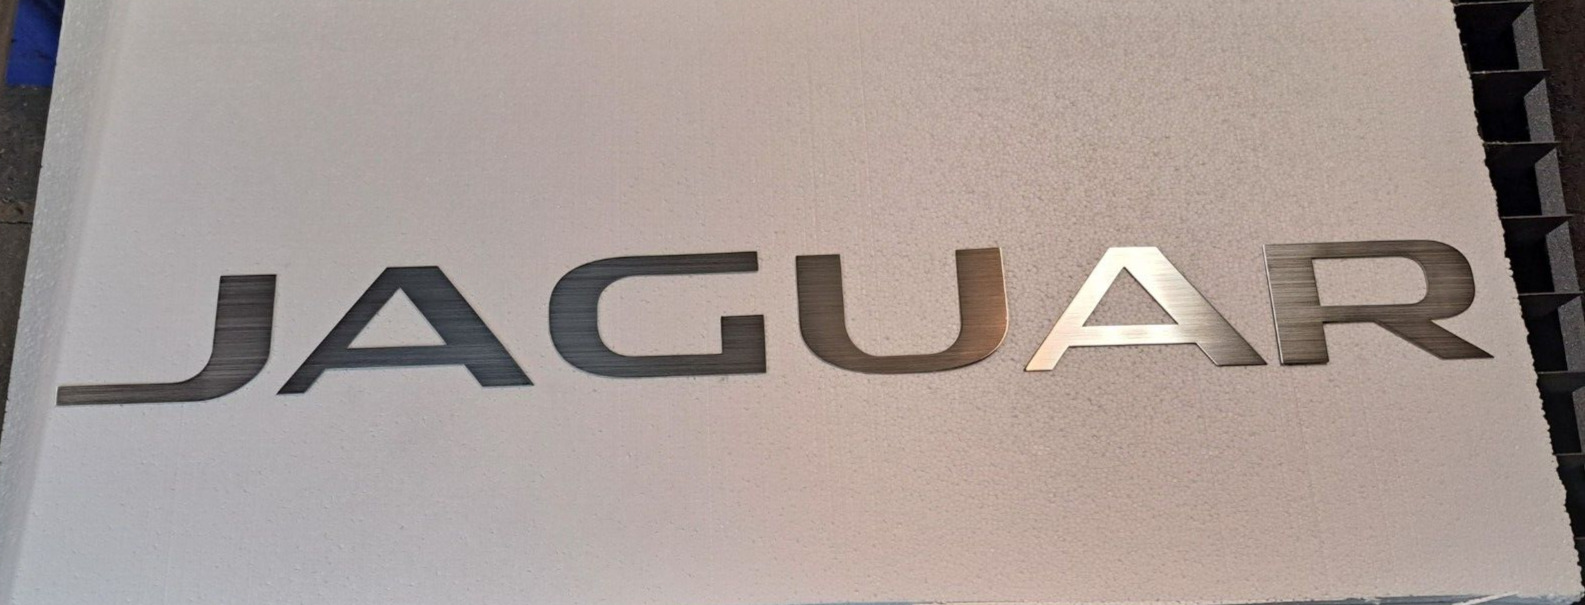 Jaguar Garage Sign Brushed Aluminum Lettering 4 Feet Wide